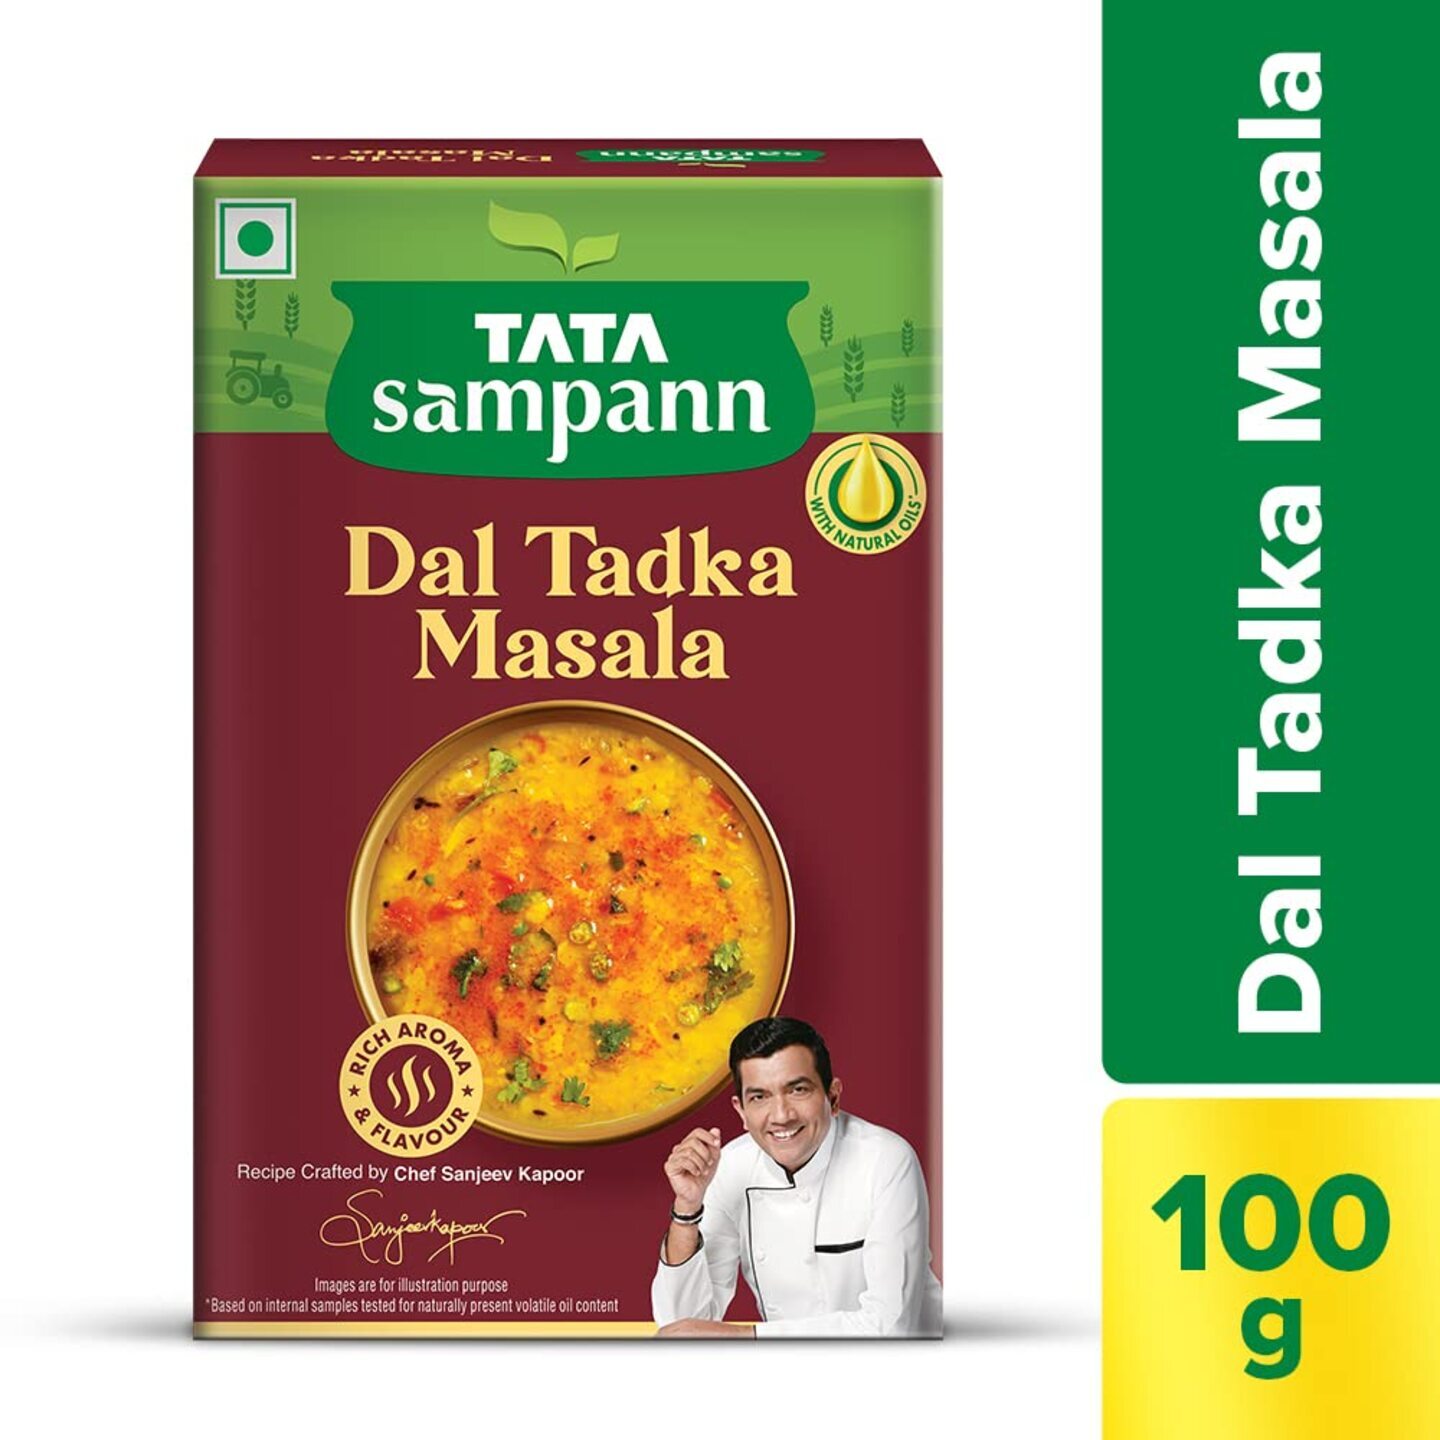 Tata Sampann Dal Tadka Masala with Natural Oils, Crafted by Chef Sanjeev Kapoor, 100g